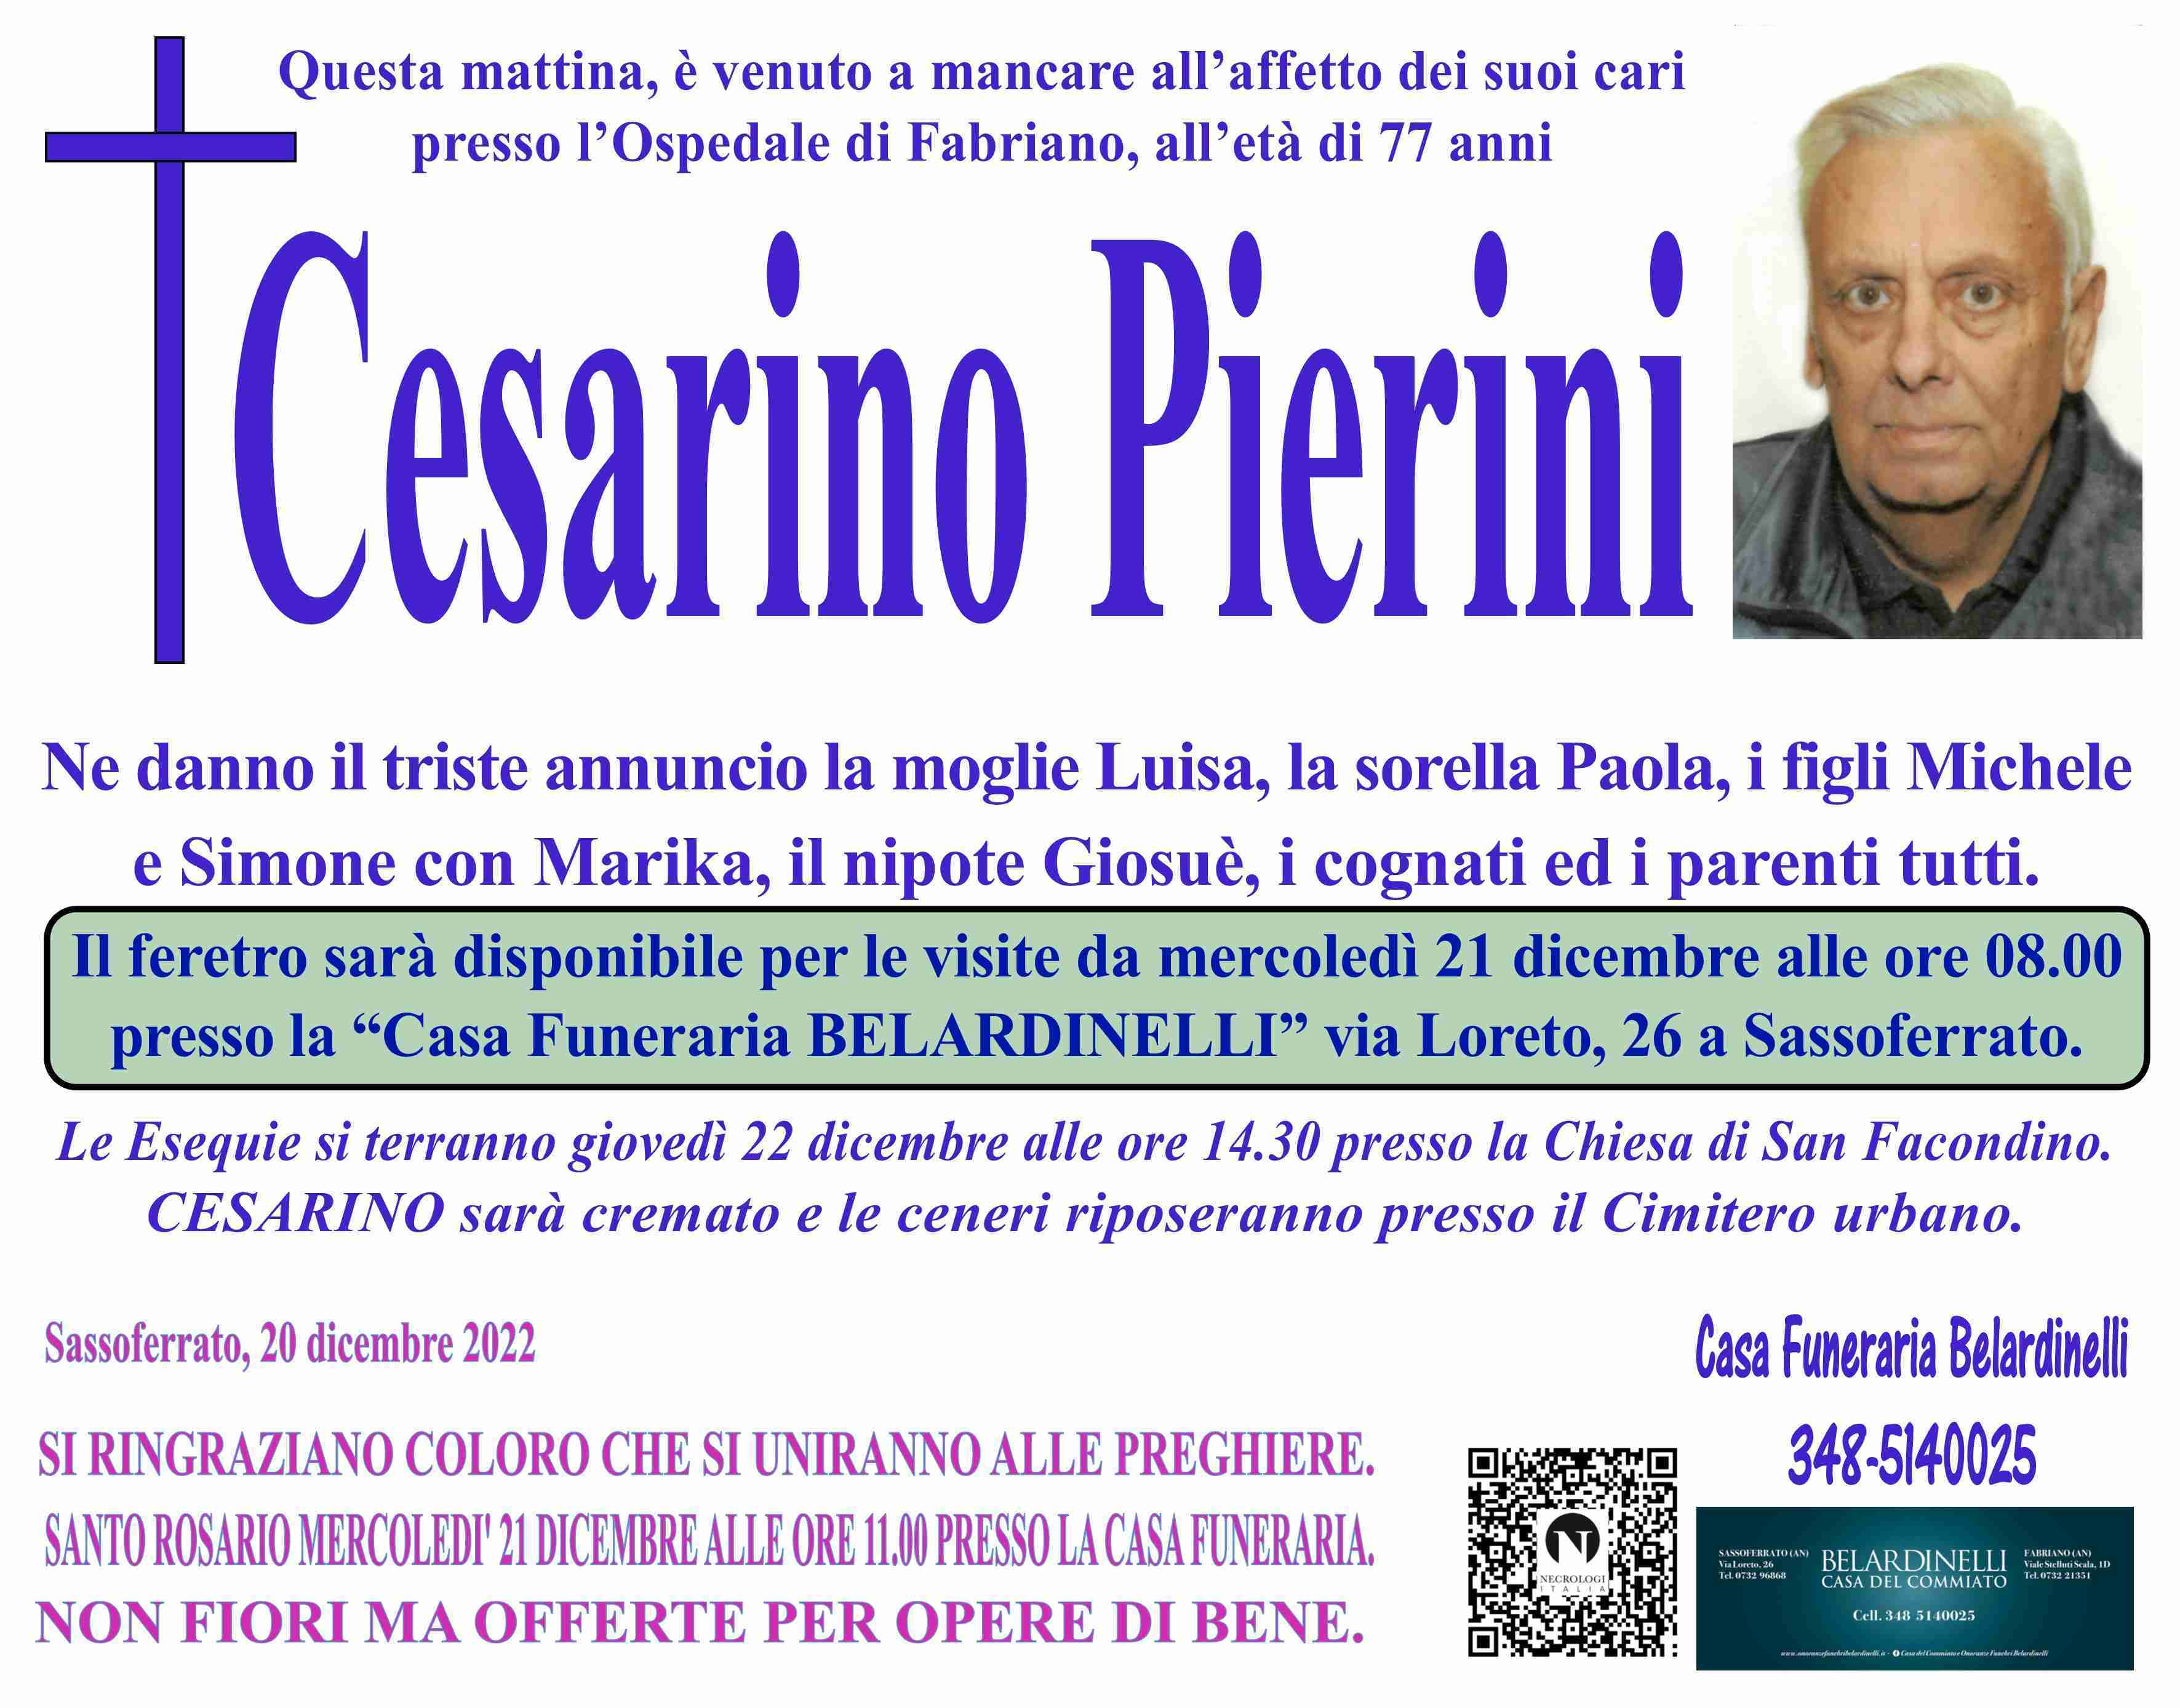 Cesarino Pierini